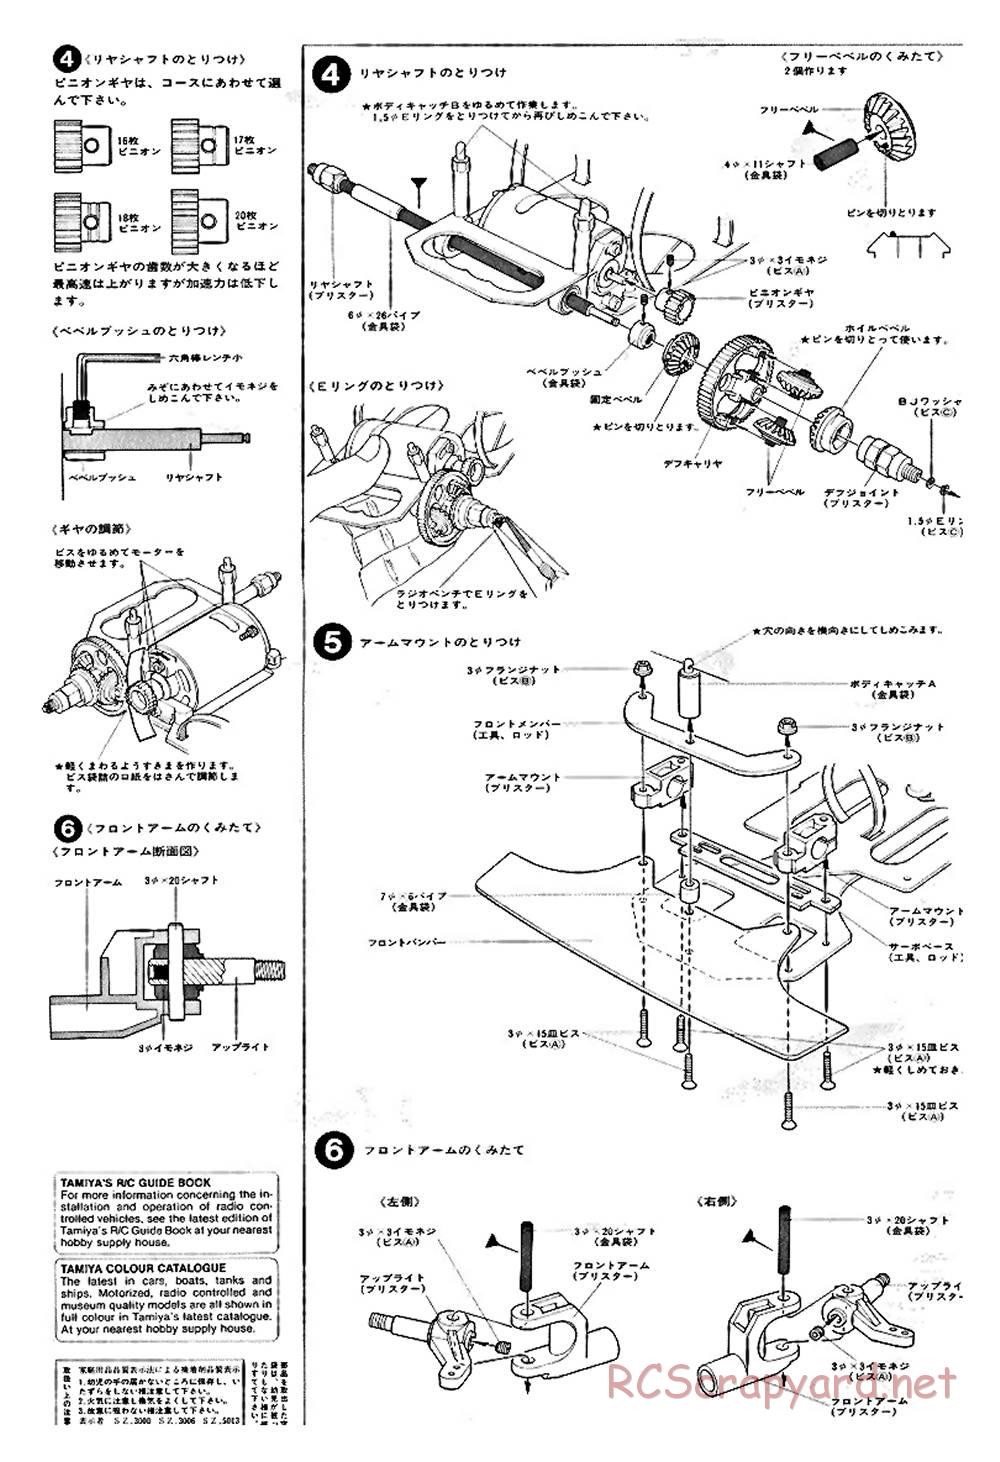 Tamiya - Ford C100 - RM MK.4 - 58033 - Manual - Page 4